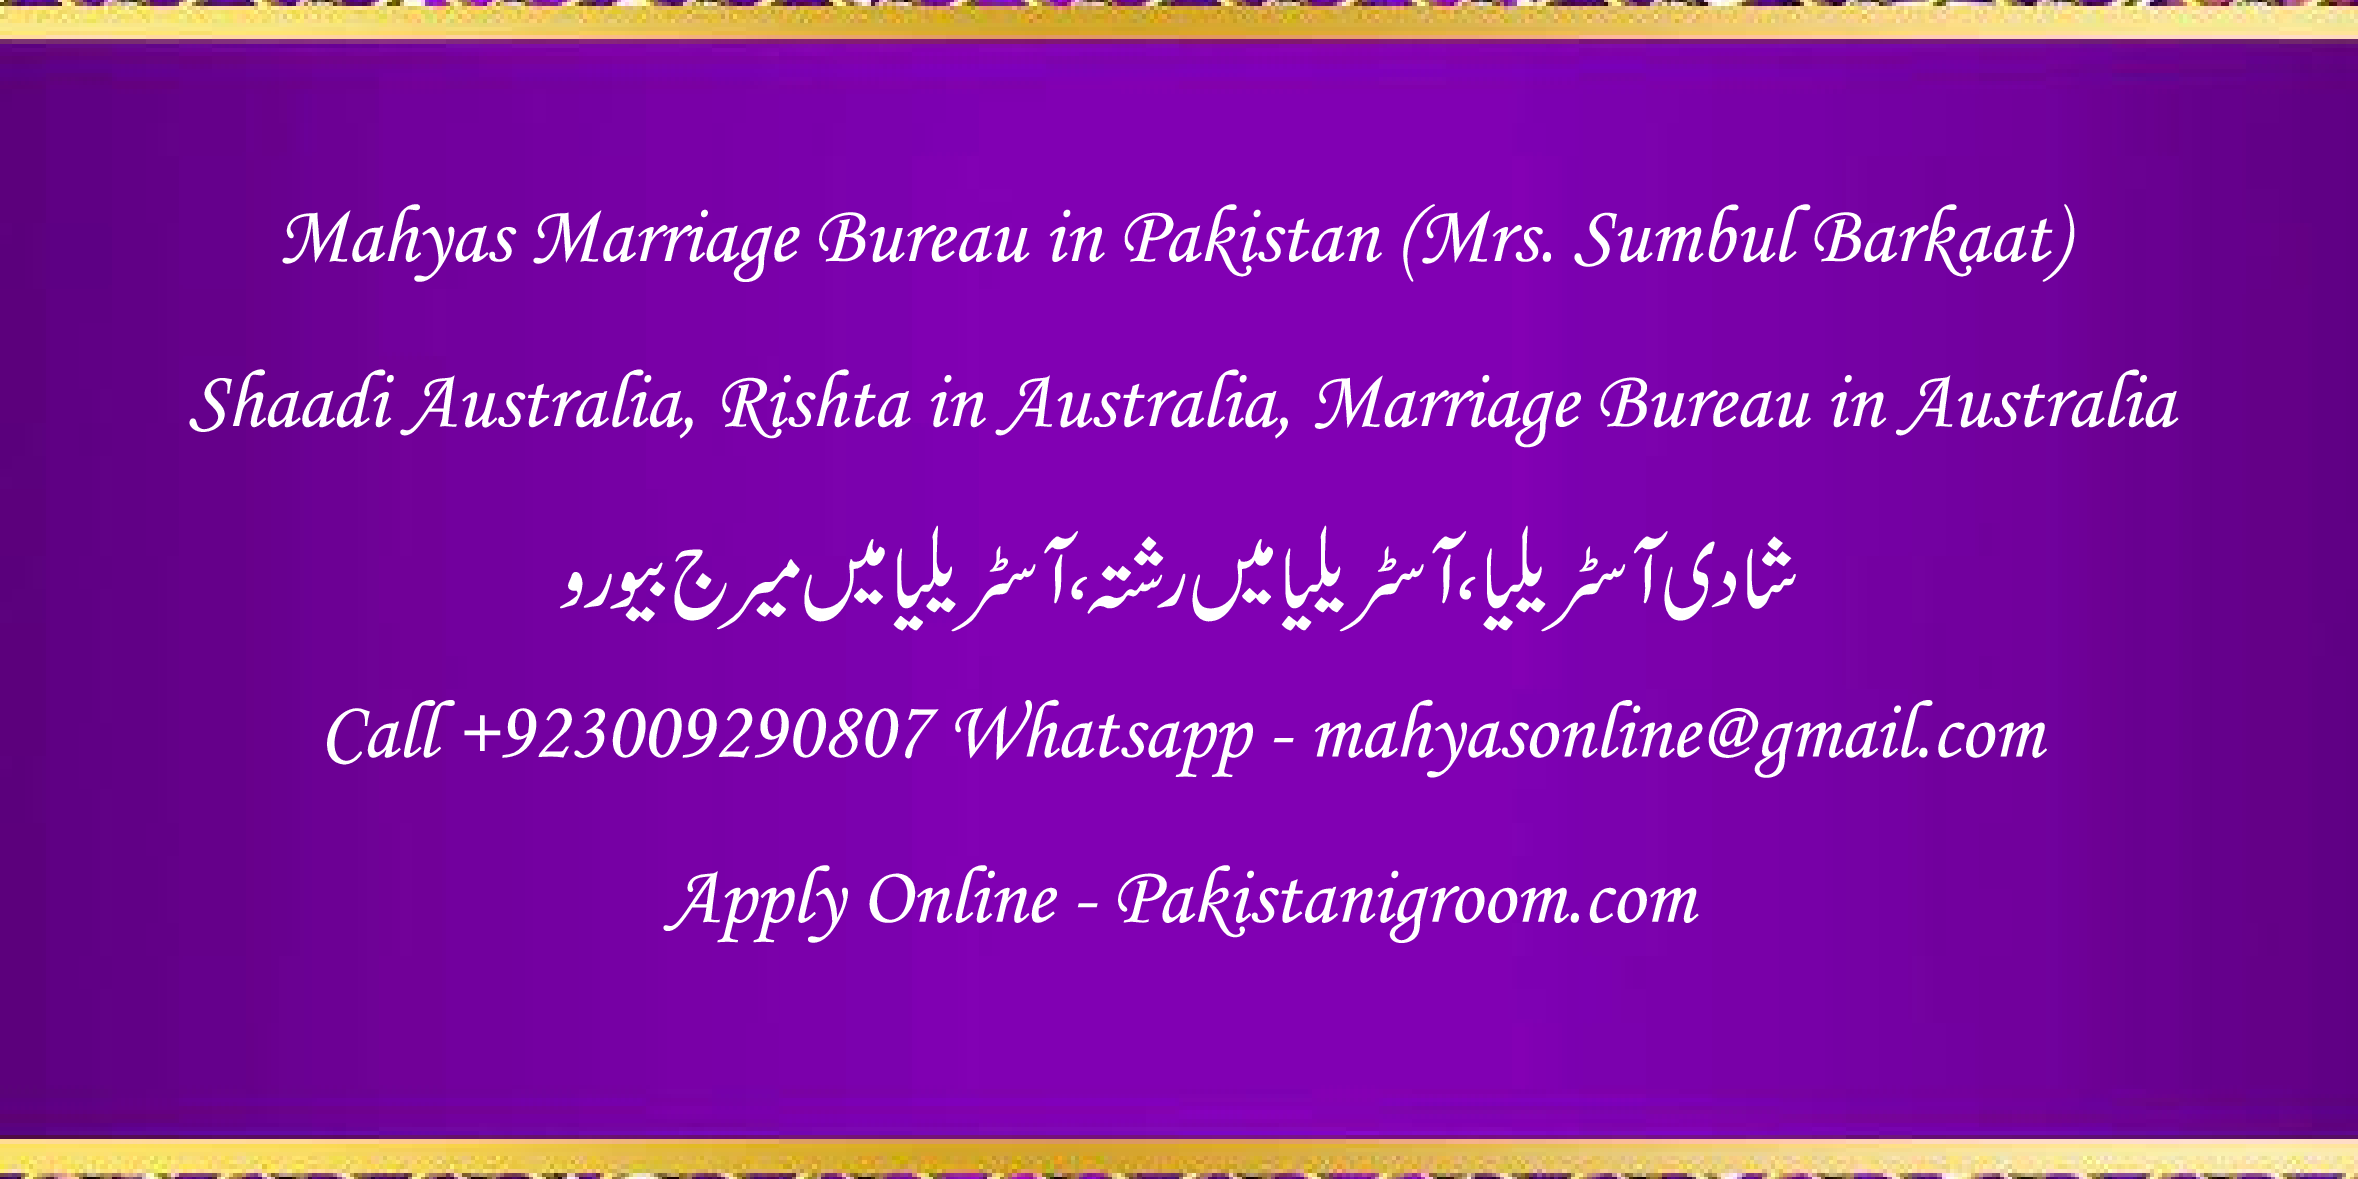 Mahyas-marriage-bureau-Karachi-Pakistan-for-Shia-Sunni-Remarriage-Divorce-Widow-Second-marriage-Punjabi-Pashto-Urdu-24.png